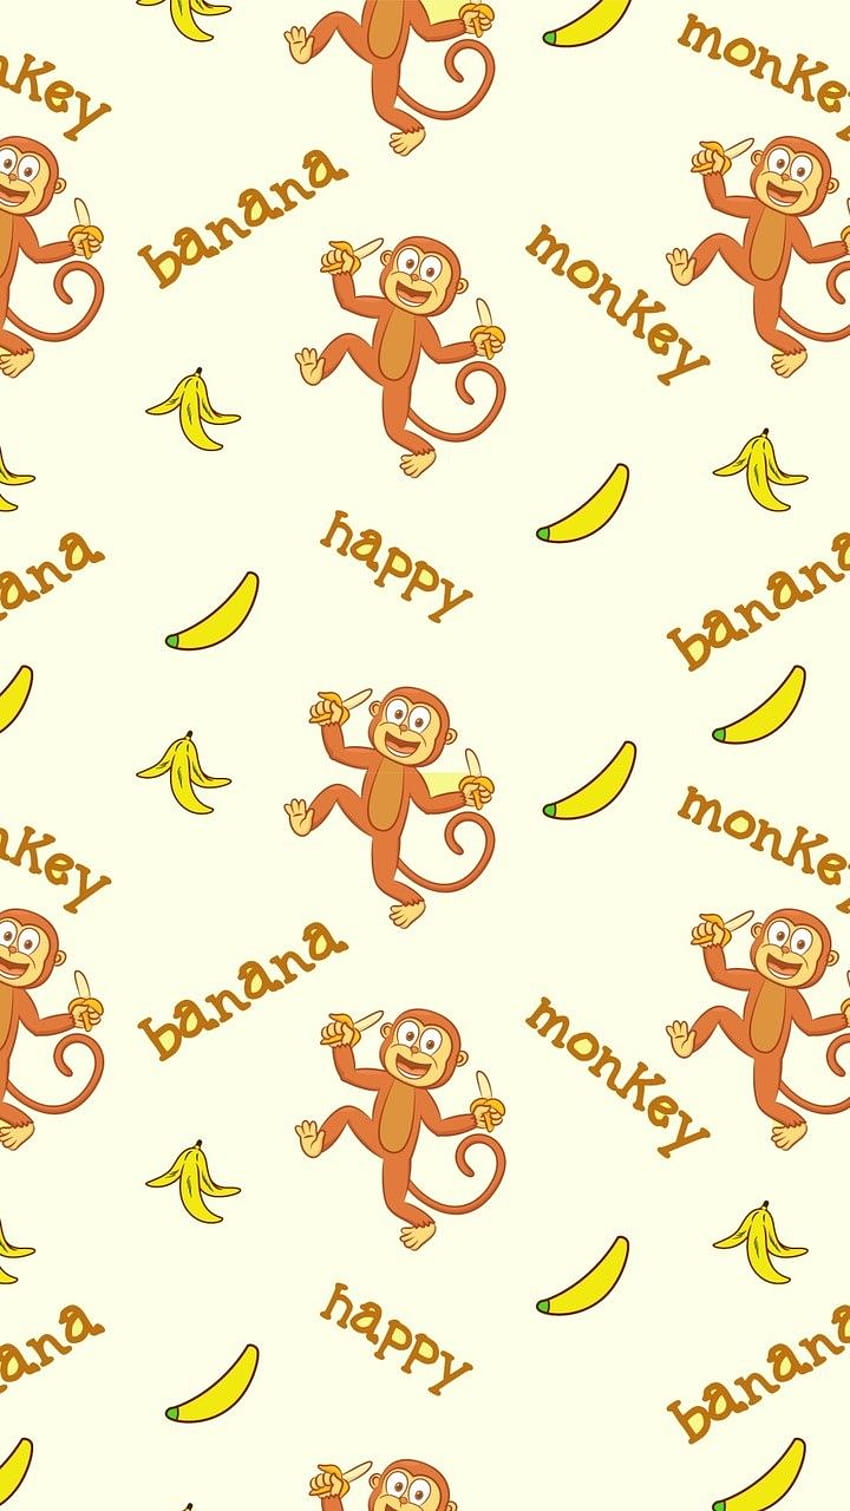 hewan, seni, Latar Belakang, pisang, indah, keindahan, kartun, warna-warni, binatang lucu, Desain, , mode, modern, ilustrasi, inspirasi, kawaii, kemewahan, monyet kecil, monyet, pastel, pola, pola, cantik, tekstur, w , monyet kawaii yang lucu wallpaper ponsel HD